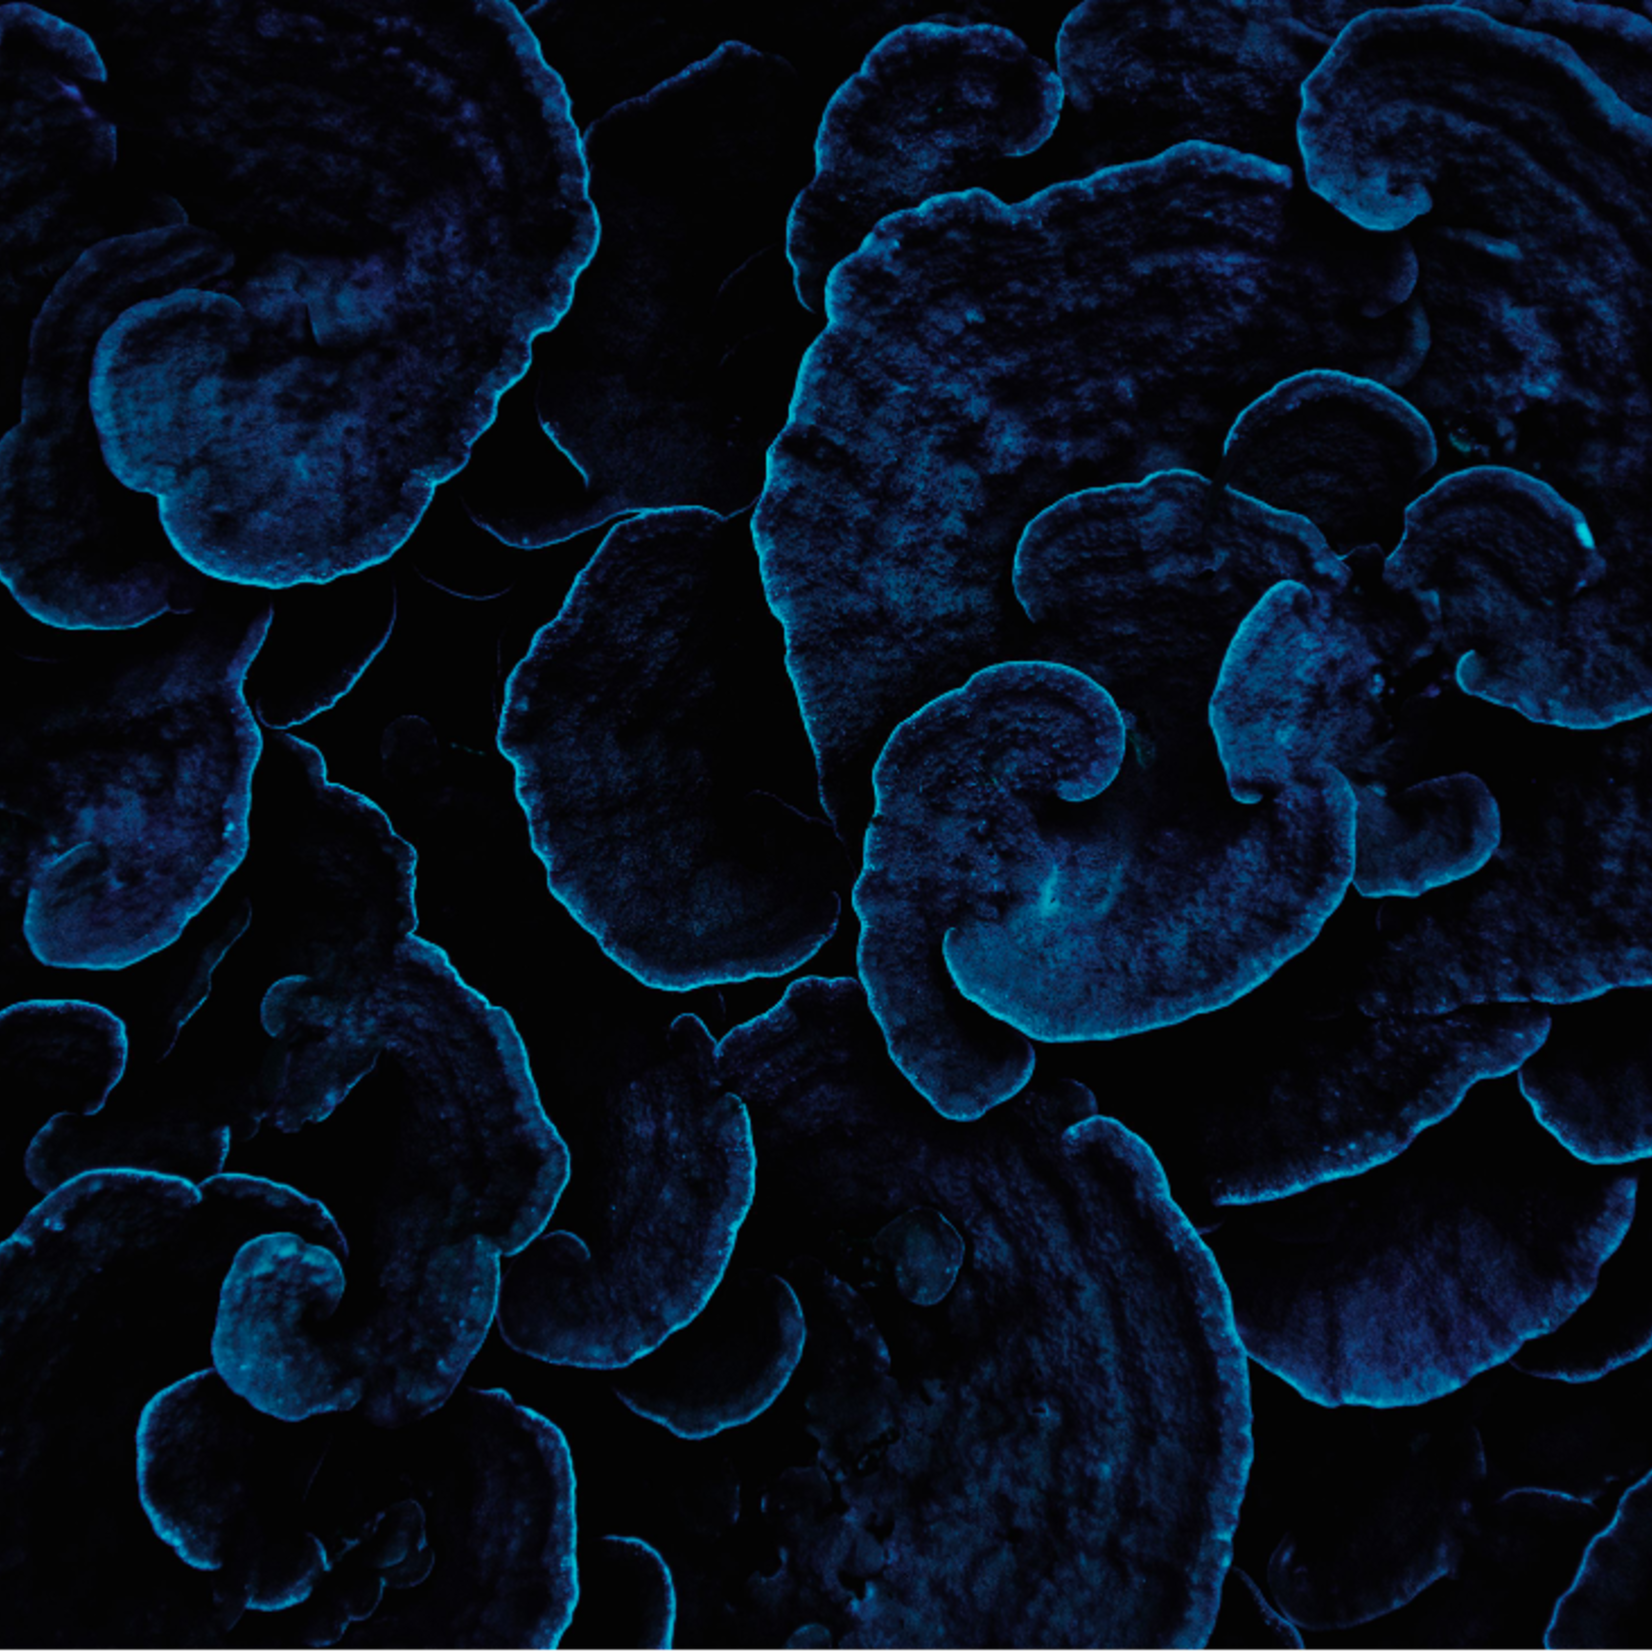 Framed Print on Rag Paper: Sea Coral II by Enric Gener